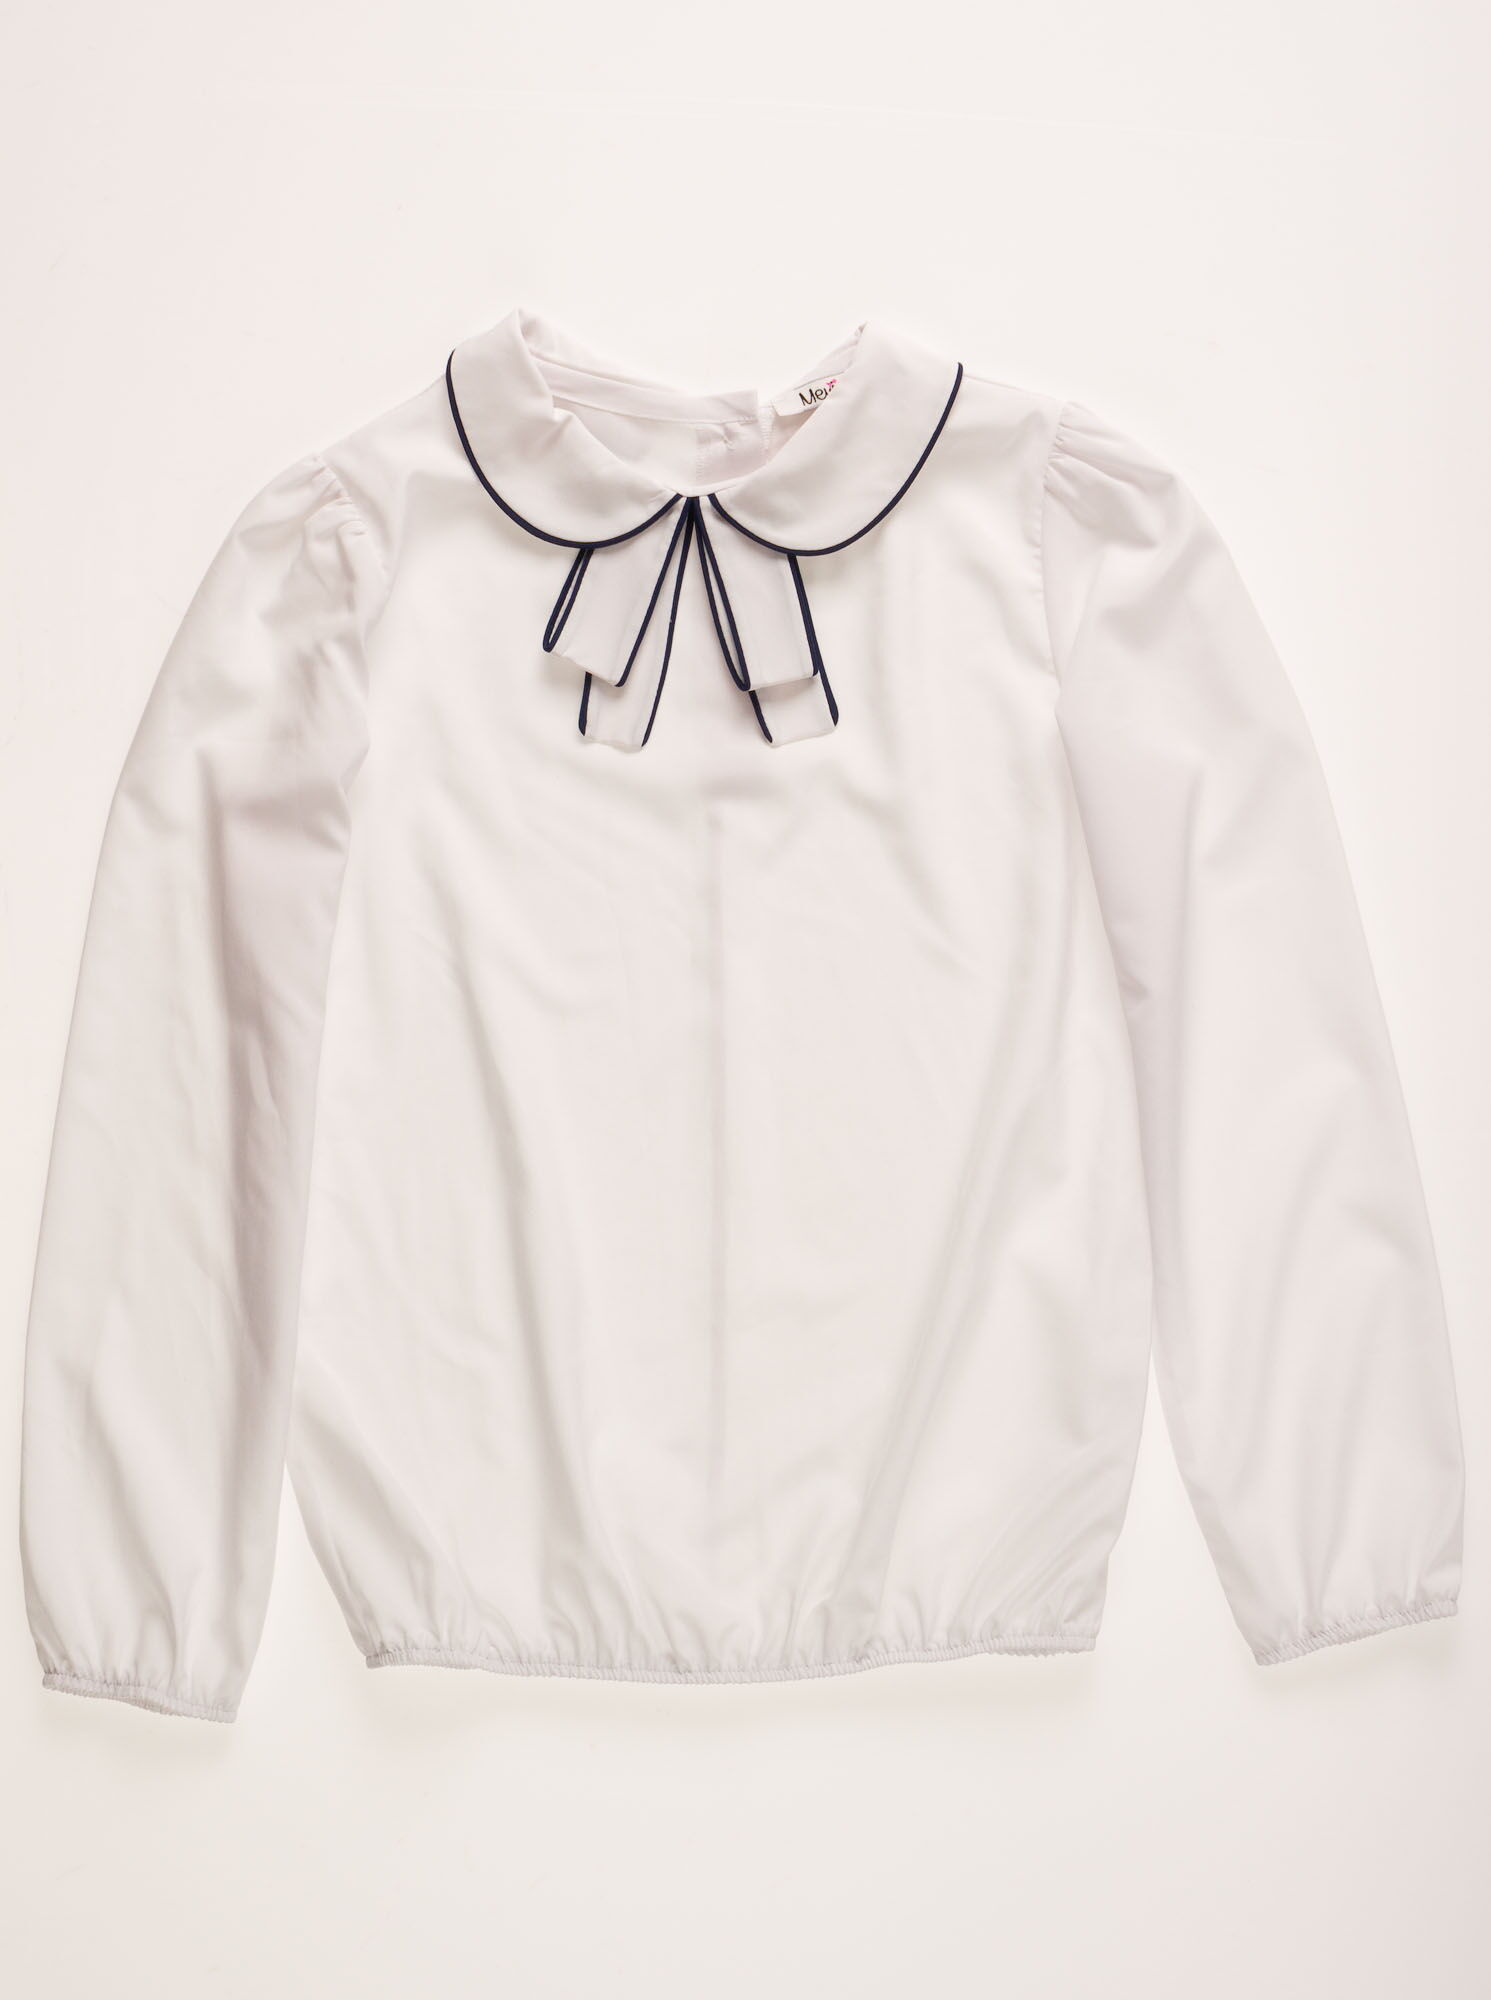 Блузка с длинным рукавом для девочки Mevis белая 2101-02 - фото